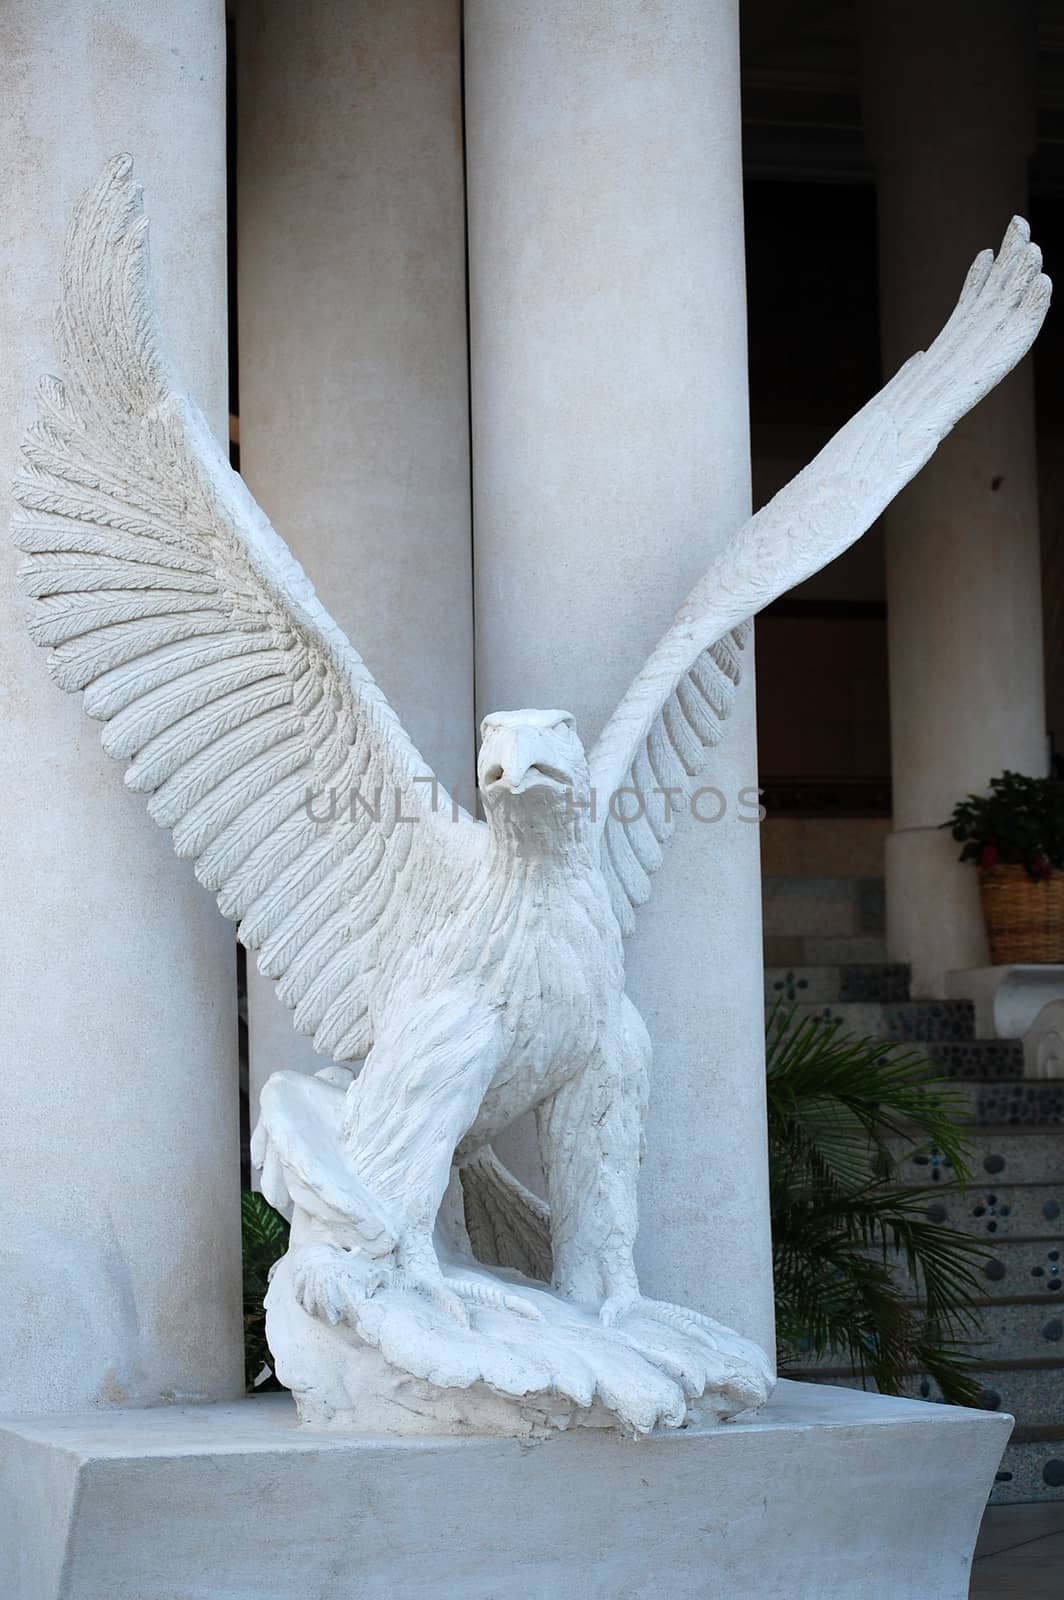 ILOCOS NORTE, PH - APR. 8: Java Hotel's eagle statue on April 8, 2009 in Ilocos Norte, Philippines.